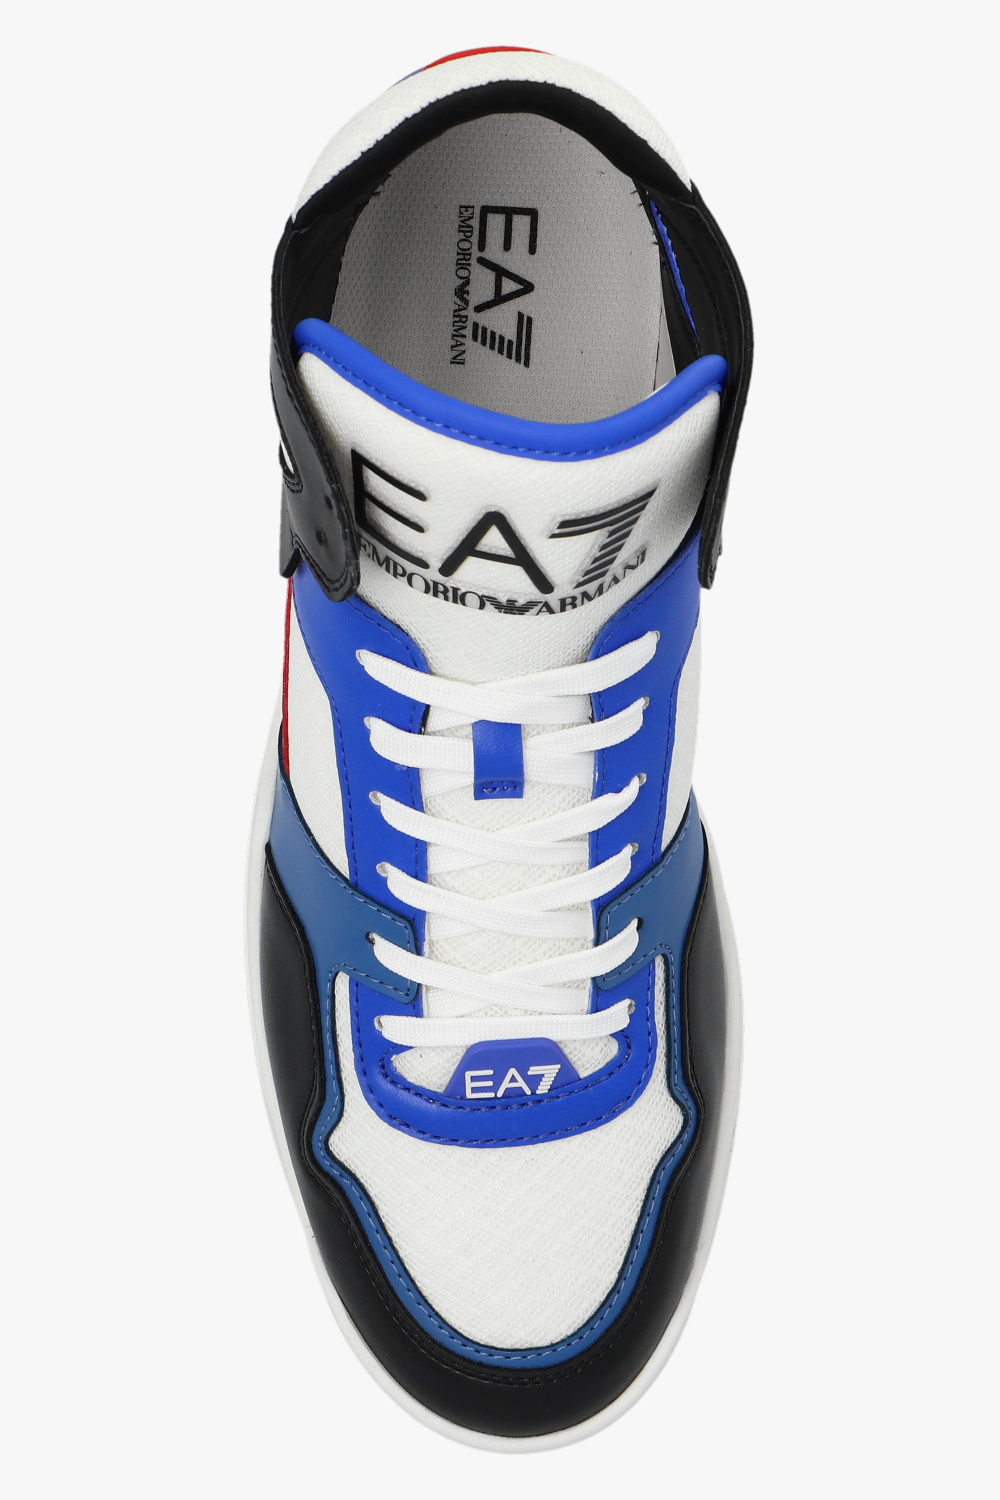 Multicolour High-top sneakers EA7 Emporio Armani - Vitkac GB